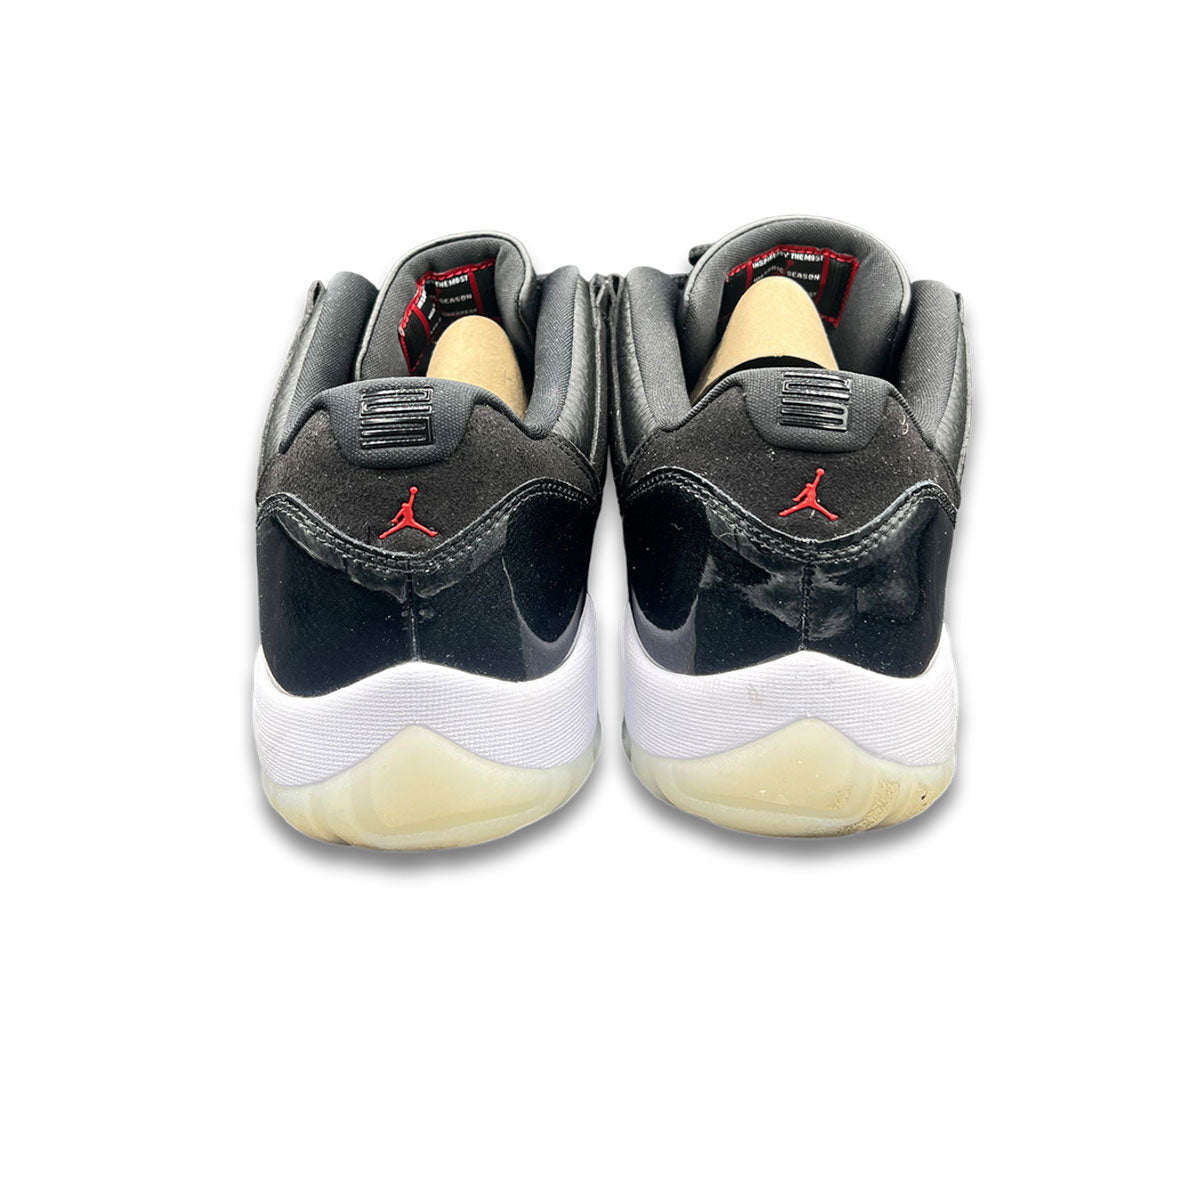 Air Jordan 11 Retro Low 72-10 Size 13 (Pre-Owned)